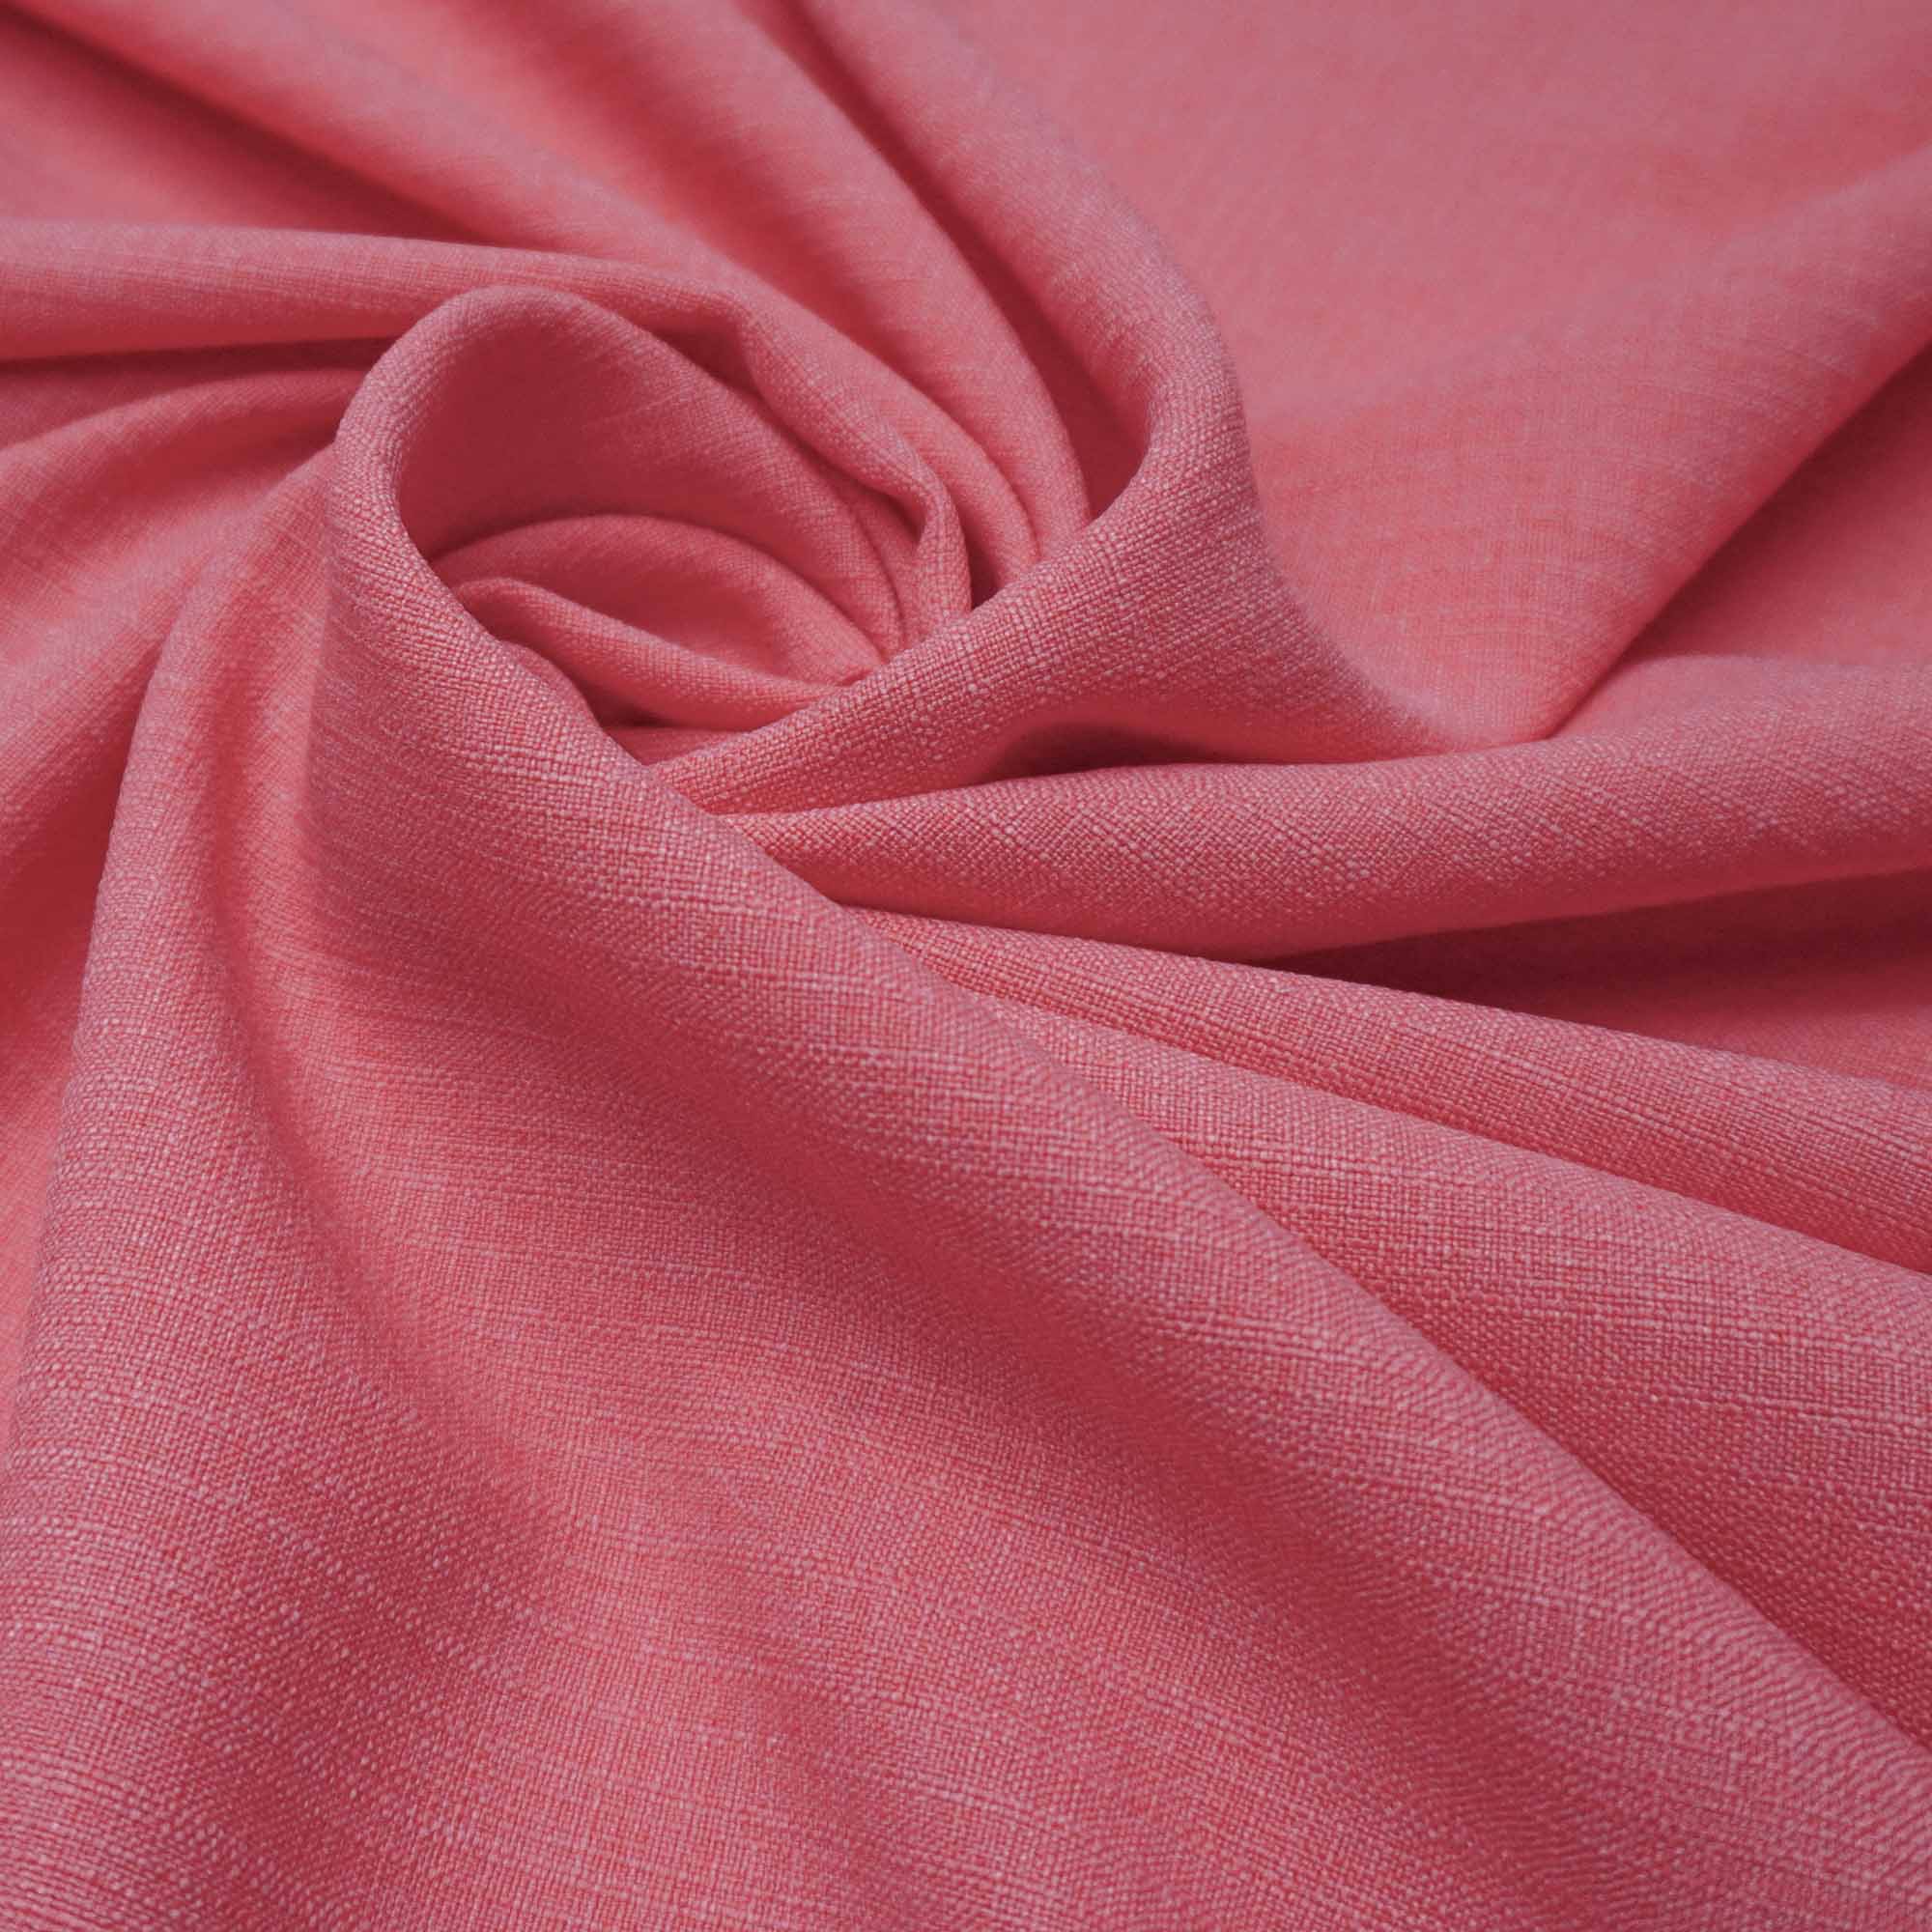 Tecido poliester com textura de linho rosa coral